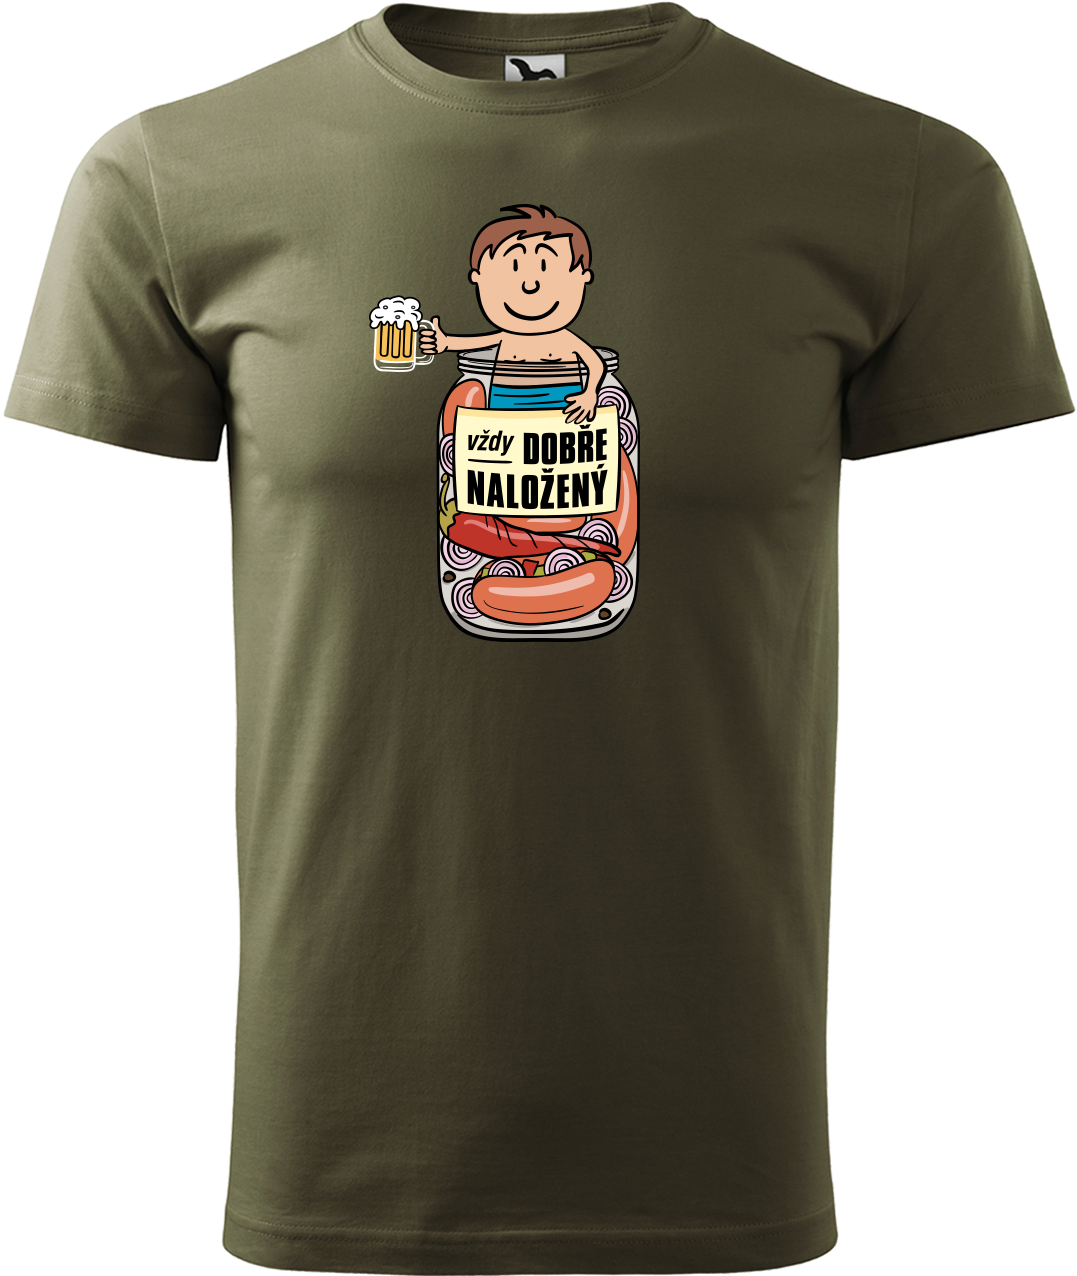 Vtipné tričko - Vždycky dobře naložený Velikost: XL, Barva: Military (69)